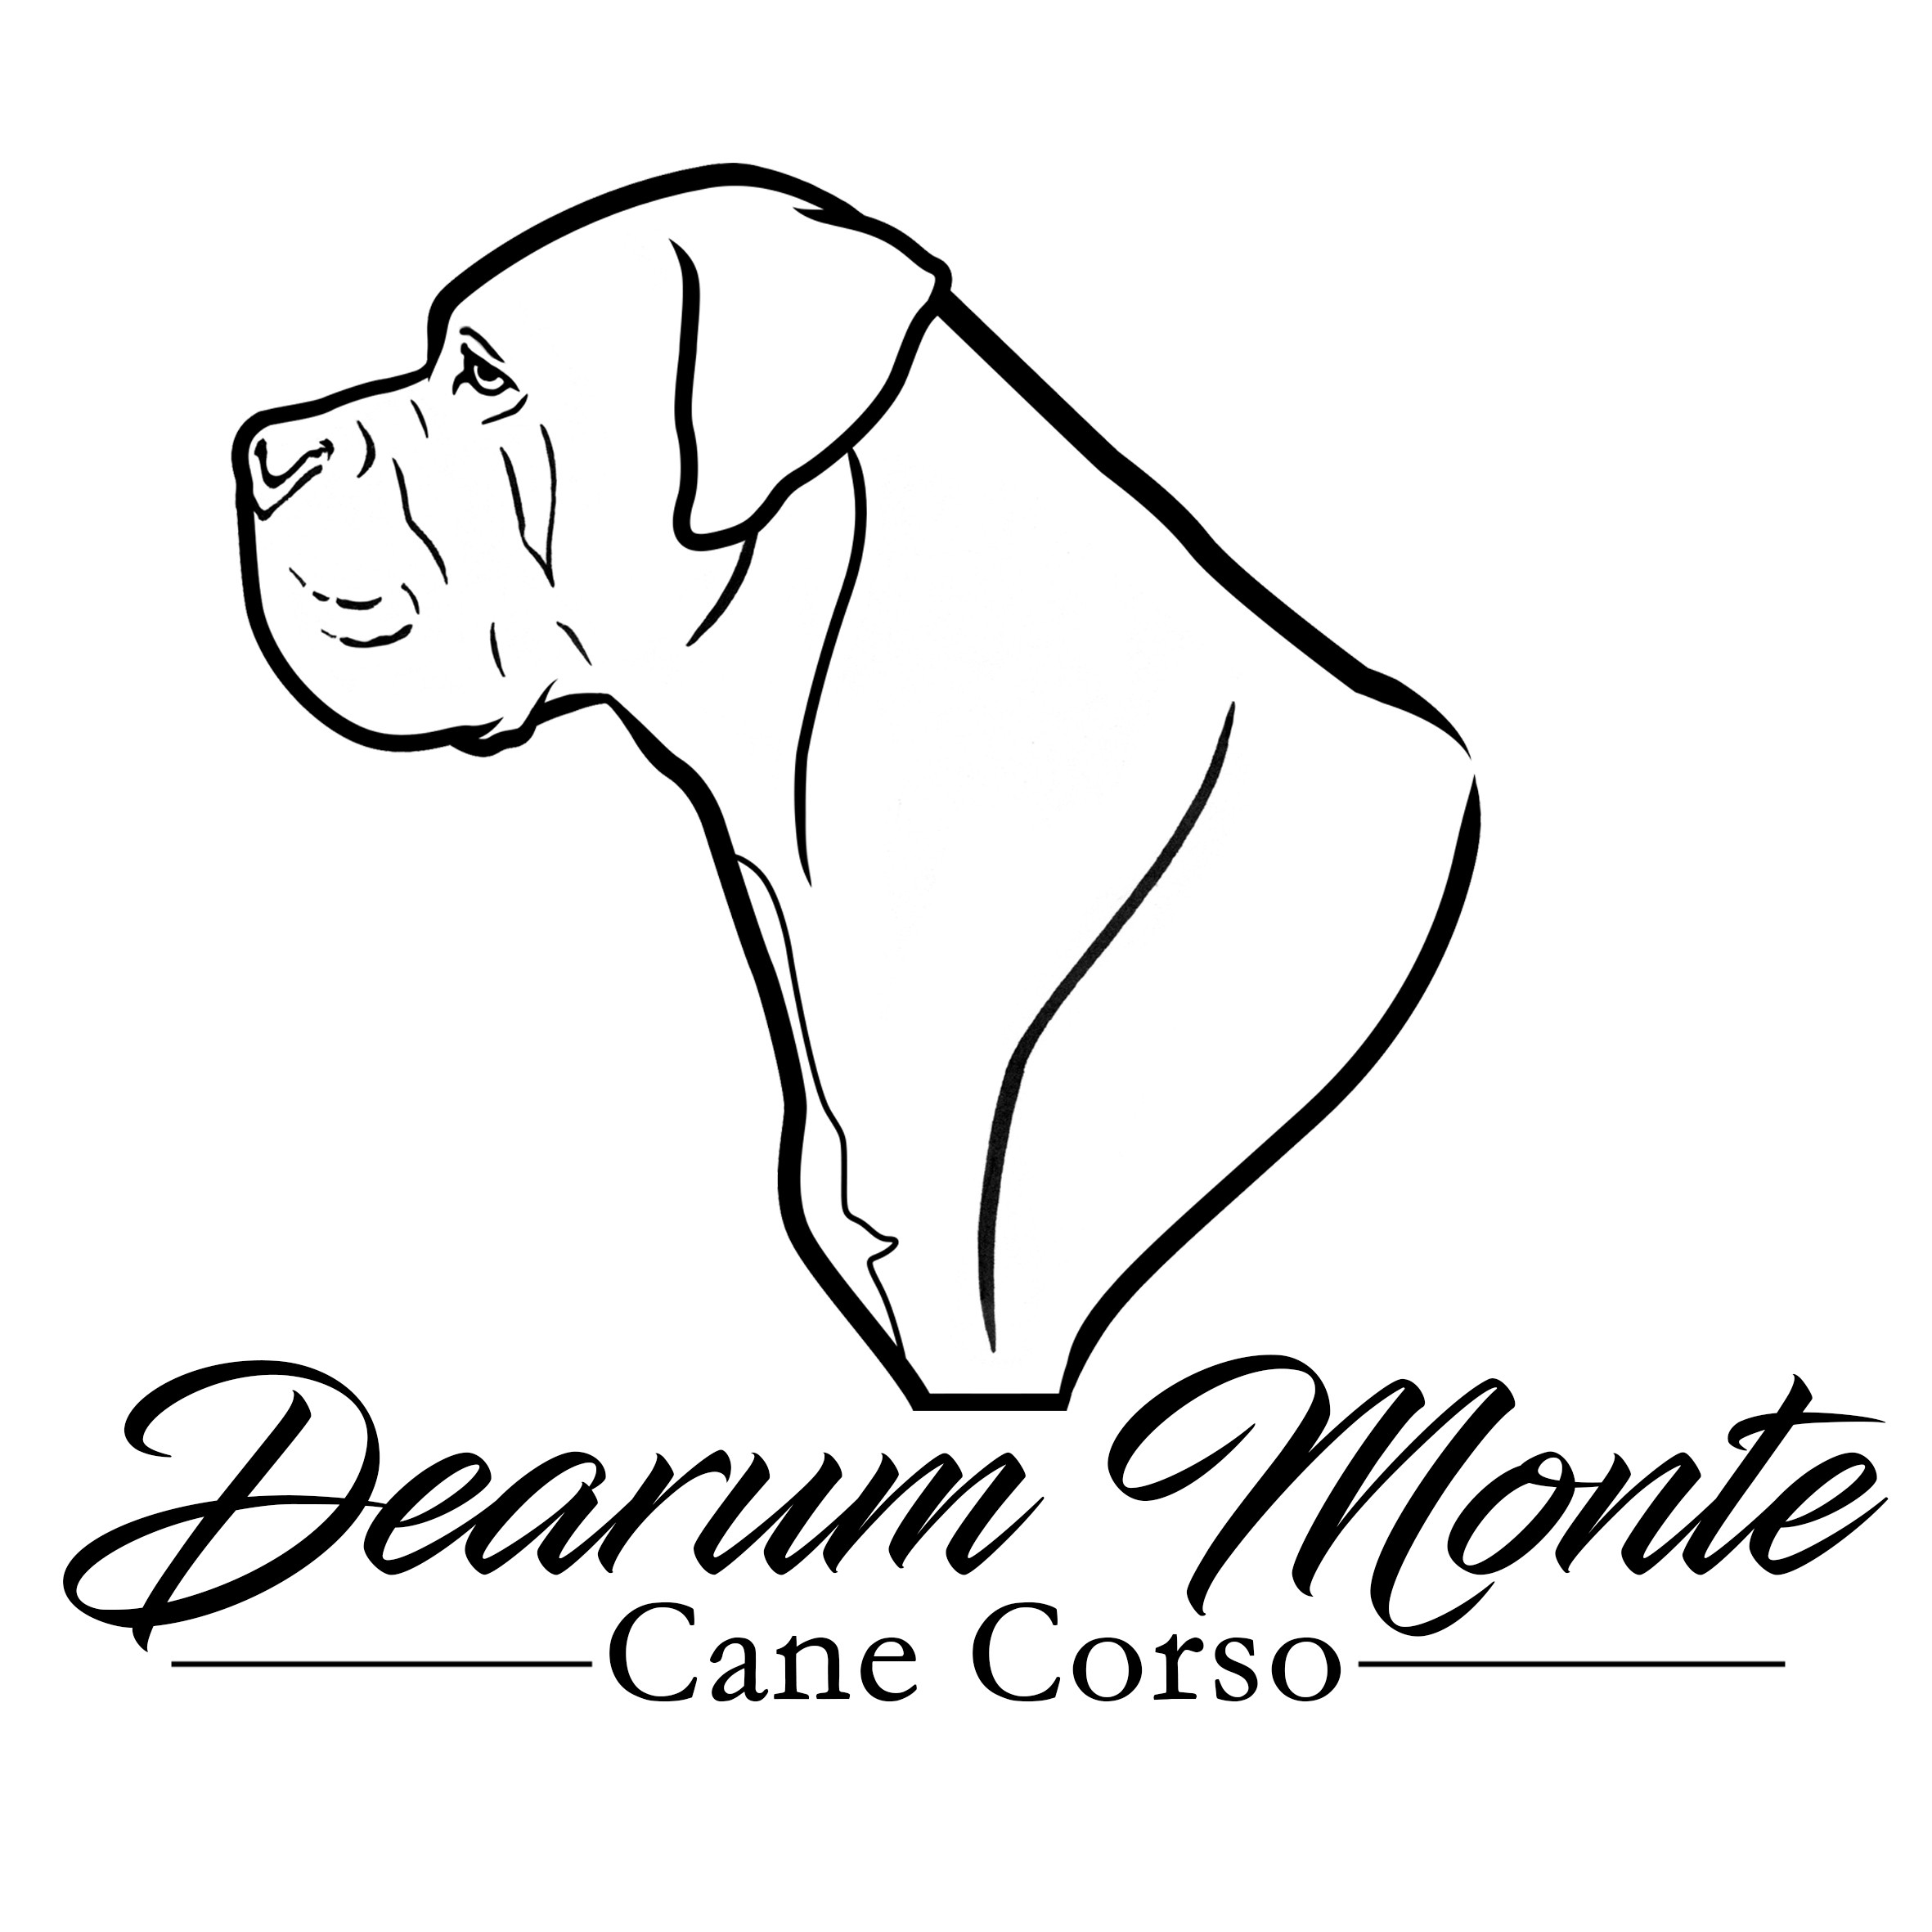 Dearum Monte